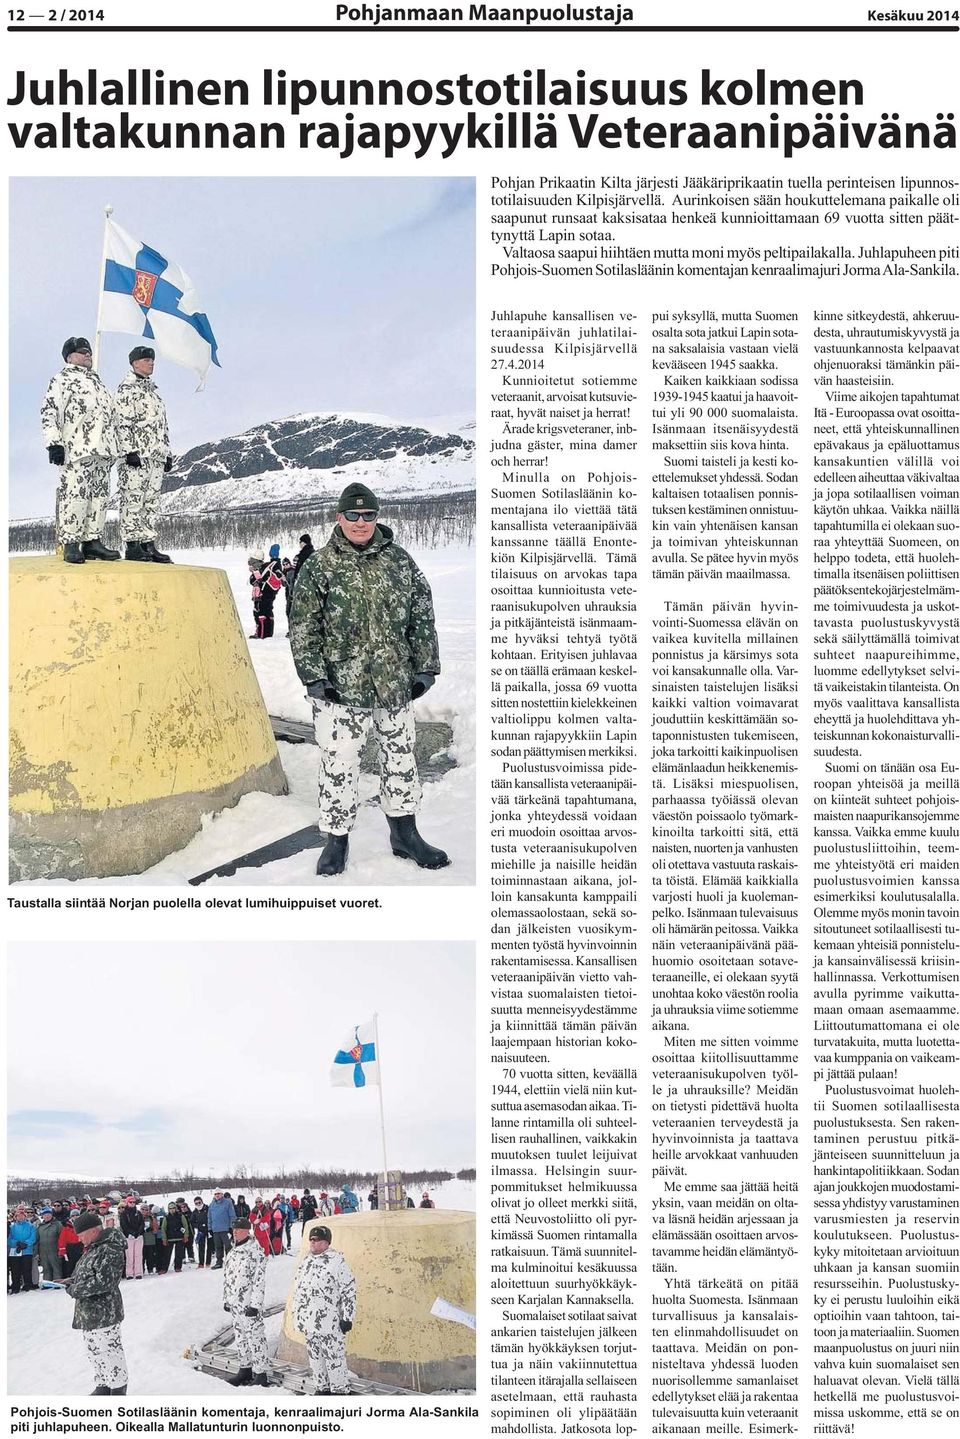 Valtaosa saapui hiihtäen mutta moni myös peltipailakalla. Juhlapuheen piti Pohjois-Suomen Sotilasläänin komentajan kenraalimajuri Jorma Ala-Sankila.